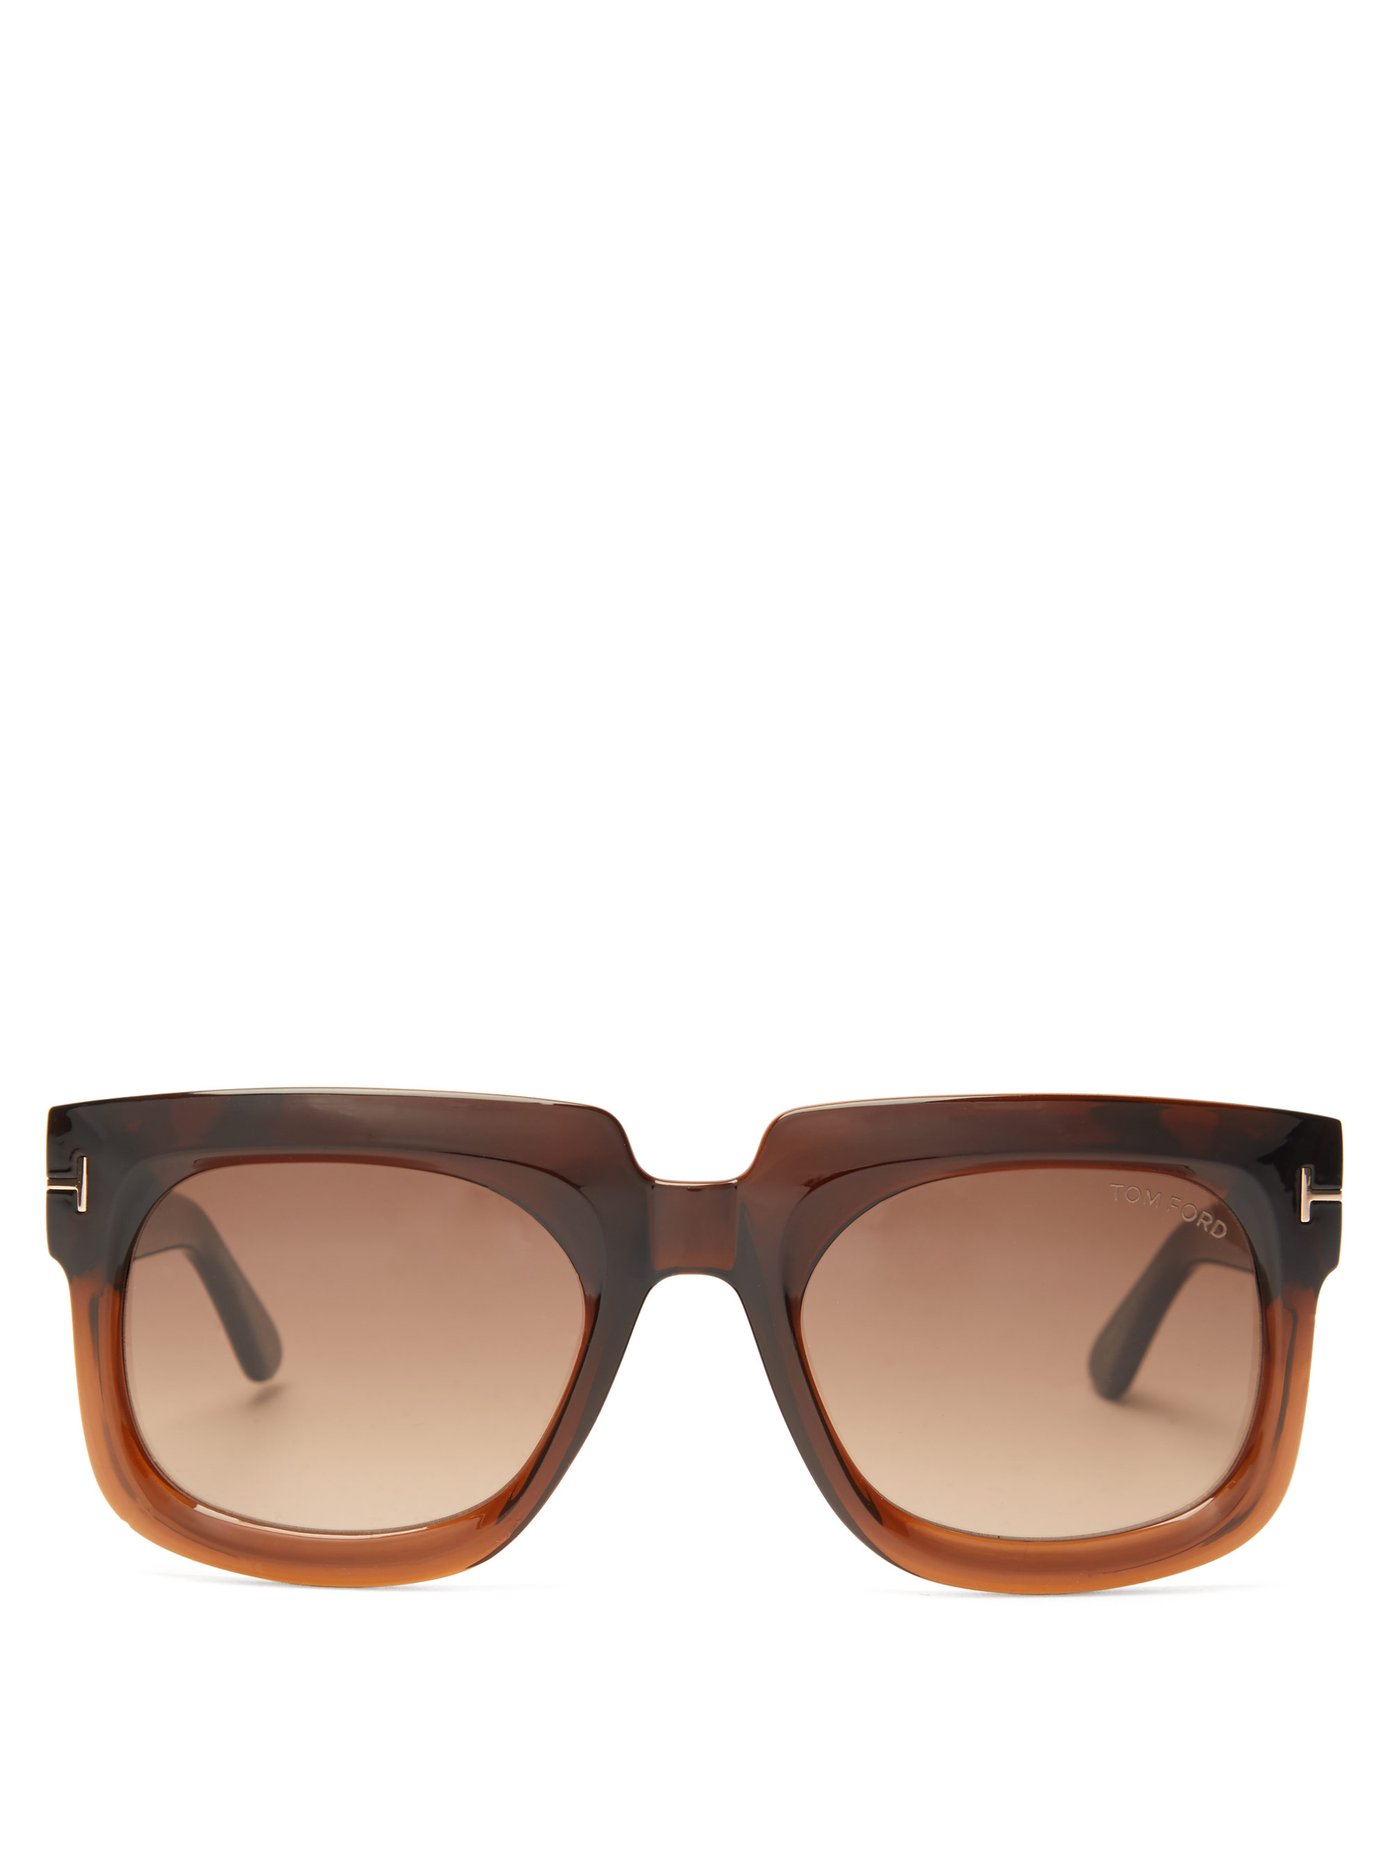 T Monogram Square Acetate Sunglasses Tom Ford Eyewear Matchesfashion Us